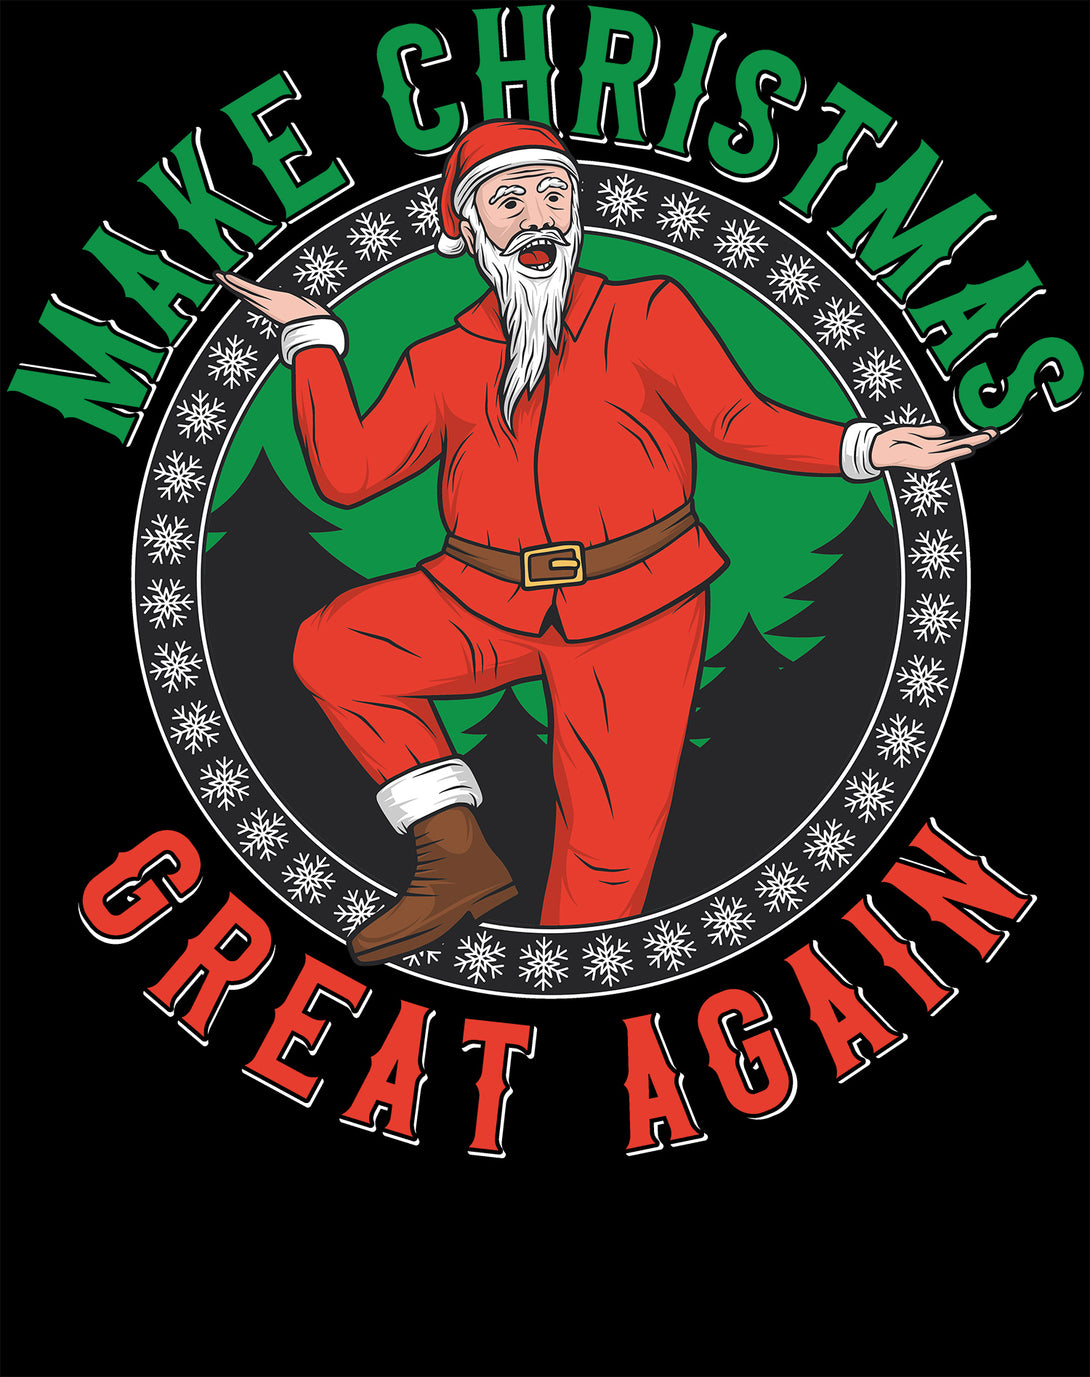 Christmas Santa Make Xmas Great Again Meme Dad Joke Fun Lol Men's T-Shirt Black - Urban Species Design Close Up